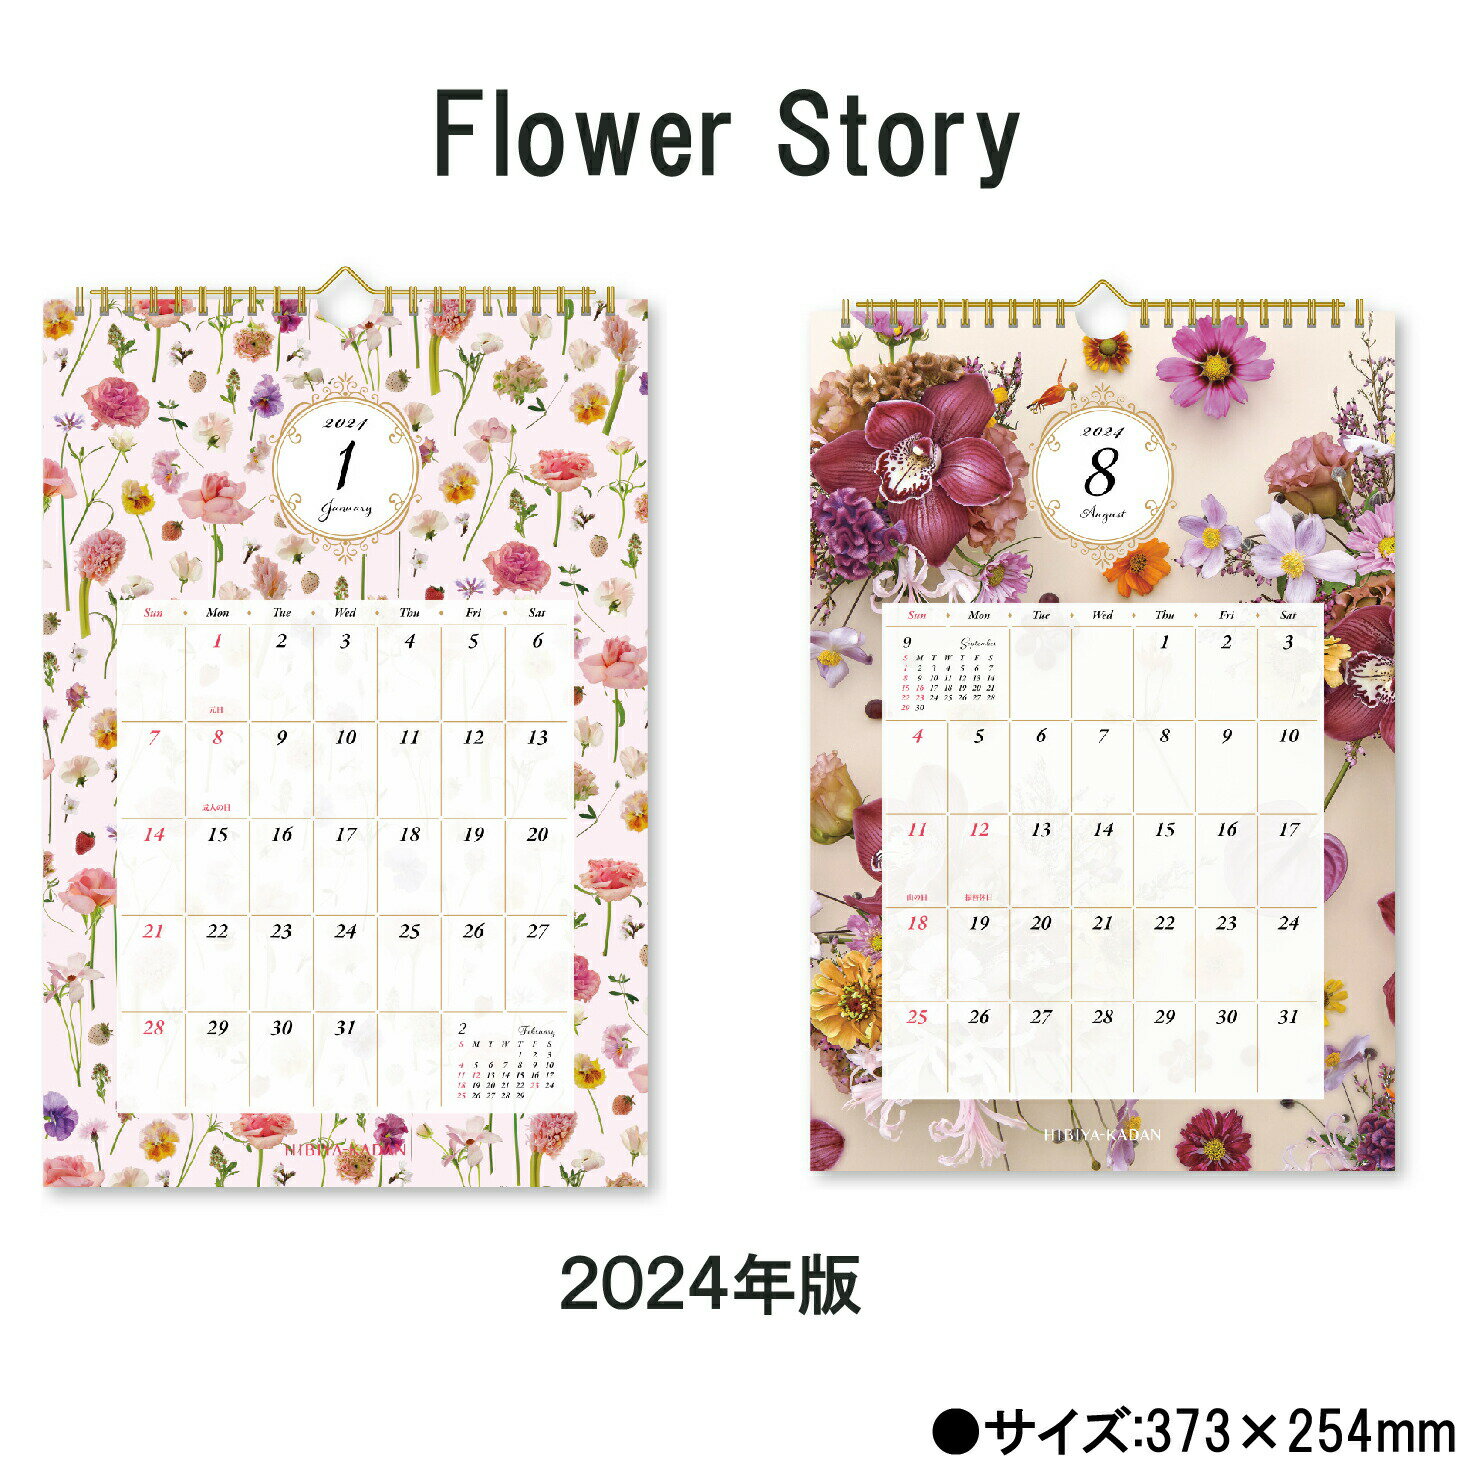 Flower Story 　商品詳細 サイズ 373×254mm ページ数 12枚 商品説明 ・日比谷花壇がプロデュースする「花屋さんのお花柄」の壁掛けカレンダーです。 ・本物の花が持つ力や贈る人への想いを「花柄」に表現しています。 カレンダーを綴る部分を金具ではなく、厚紙を使用しホットメルトという接着剤を使用した、環境に優しいエコカレンダーになります。 廃棄する時も分別の必要がない、手間もかからず環境にも配慮した商品です。 送料について ※壁掛けカレンダーを2本以上ご注文をされた際の送料は770円になりますのでご了承下さい。 神宮館縁堂　楽天市場店では、金運アップ、厄除け（魔除け）商品等多く取り扱っております。 【関連商品キーワード】 神宮館 暦 カレンダー 壁掛けカレンダー カレンダー Flower Story 2024年版 日比谷花壇 スケジュール 花 写真 書き込み インテリア おしゃれ 御洒落 オシャレ かわいい 可愛いFlower Story　商品詳細 サイズ 373×254mm ページ数 12枚 商品説明 ・日比谷花壇がプロデュースする「花屋さんのお花柄」の壁掛けカレンダーです。 ・本物の花が持つ力や贈る人への想いを「花柄」に表現しています。